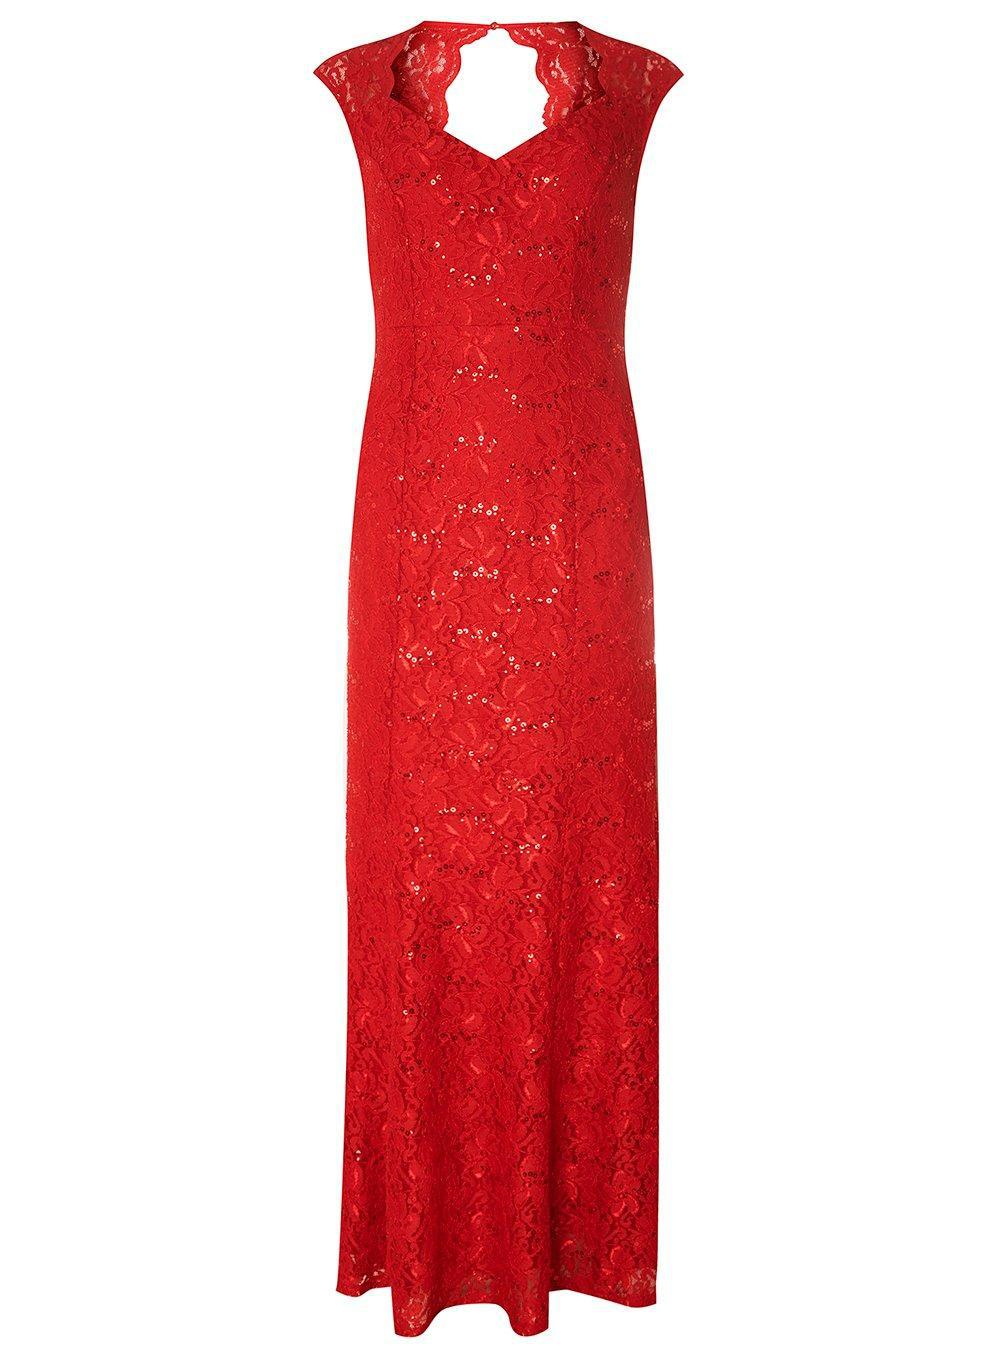 dorothy perkins red maxi dress